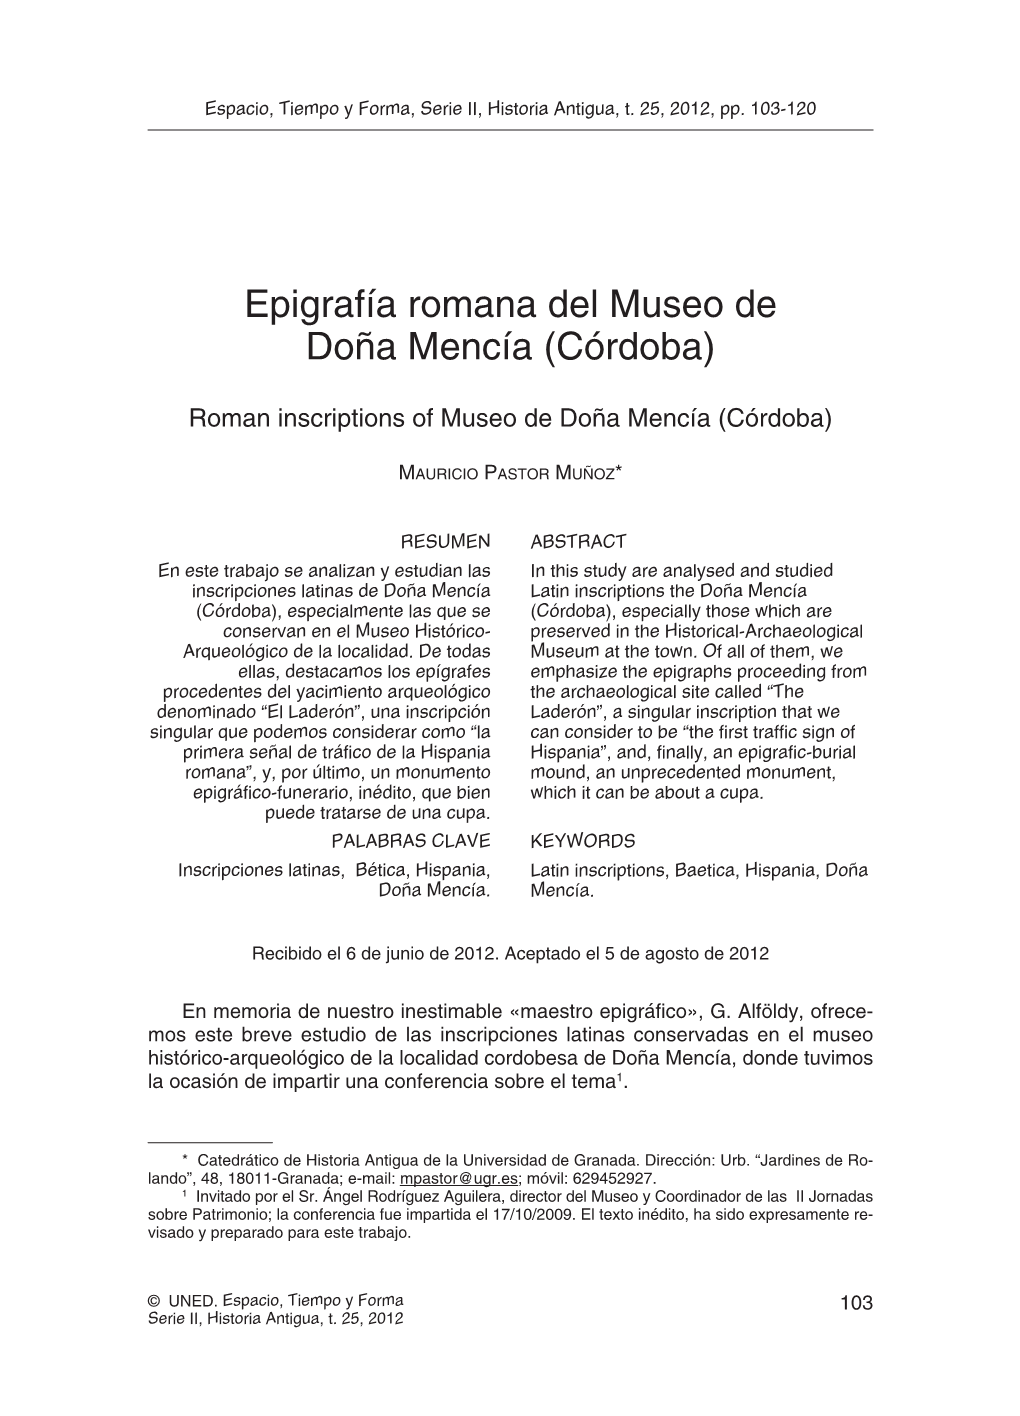 Epigrafía Romana Del Museo De Doña Mencía (Córdoba)